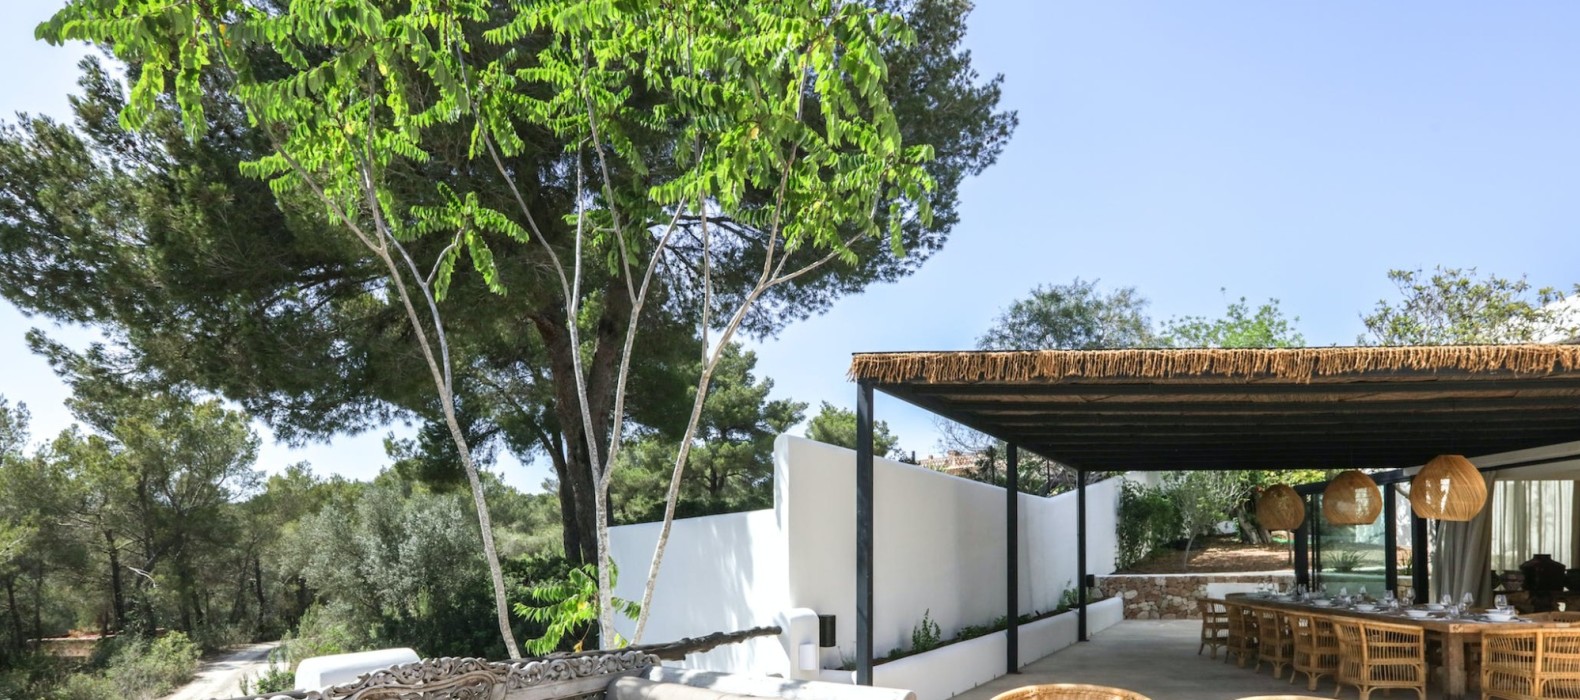 Exterior chill area of Villa Gens in Ibiza